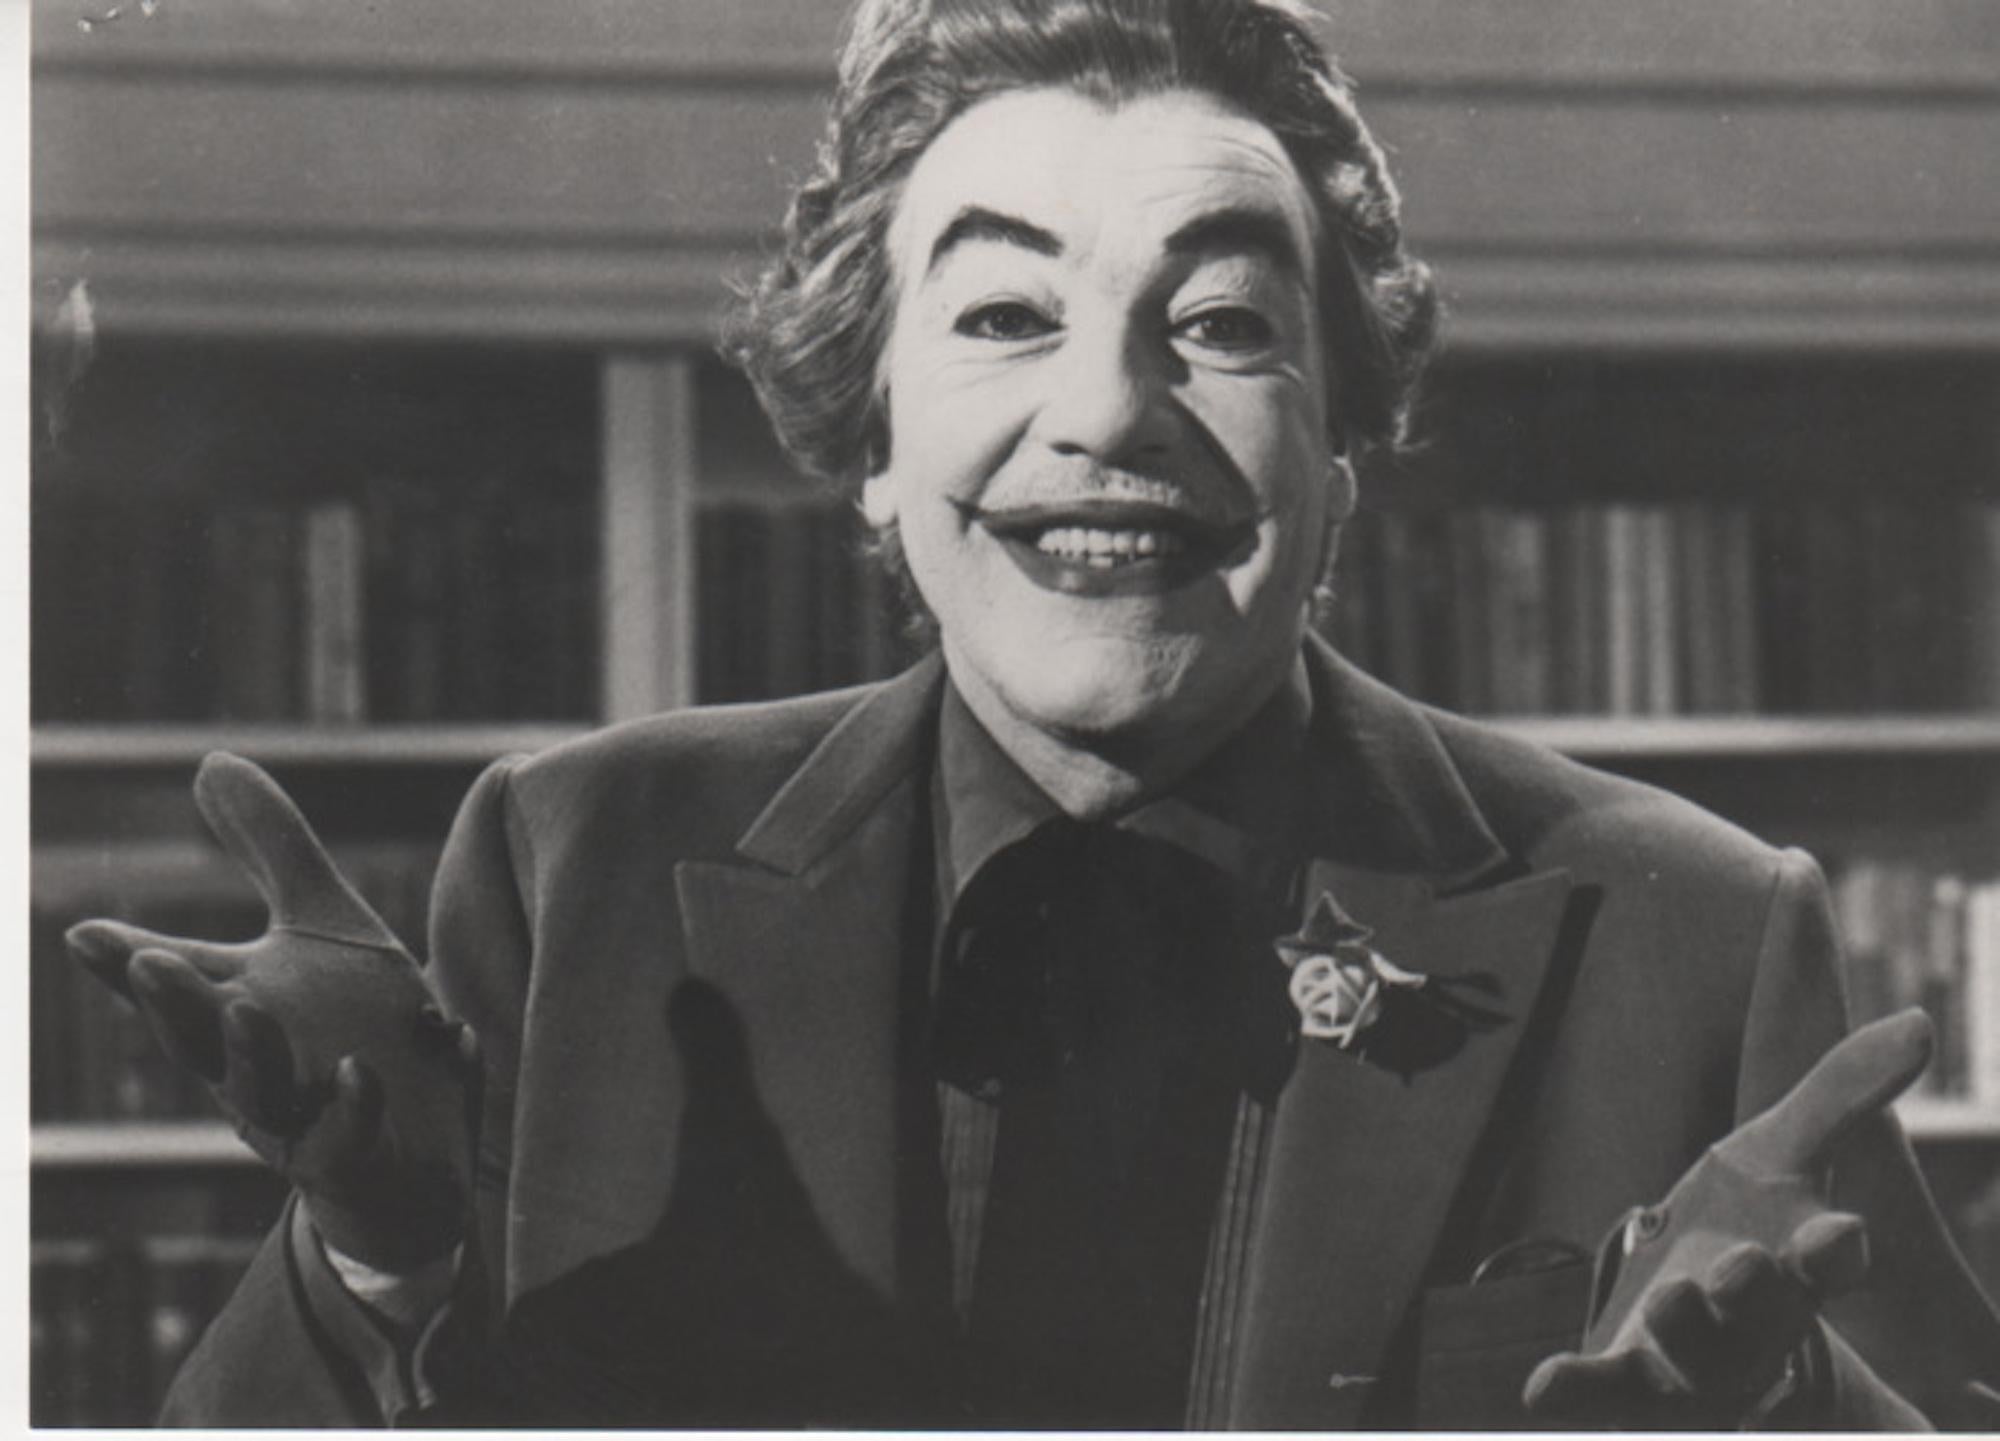 Unknown Portrait Photograph - Cesar Romero as "The Joker" - Vintage Photo -1966